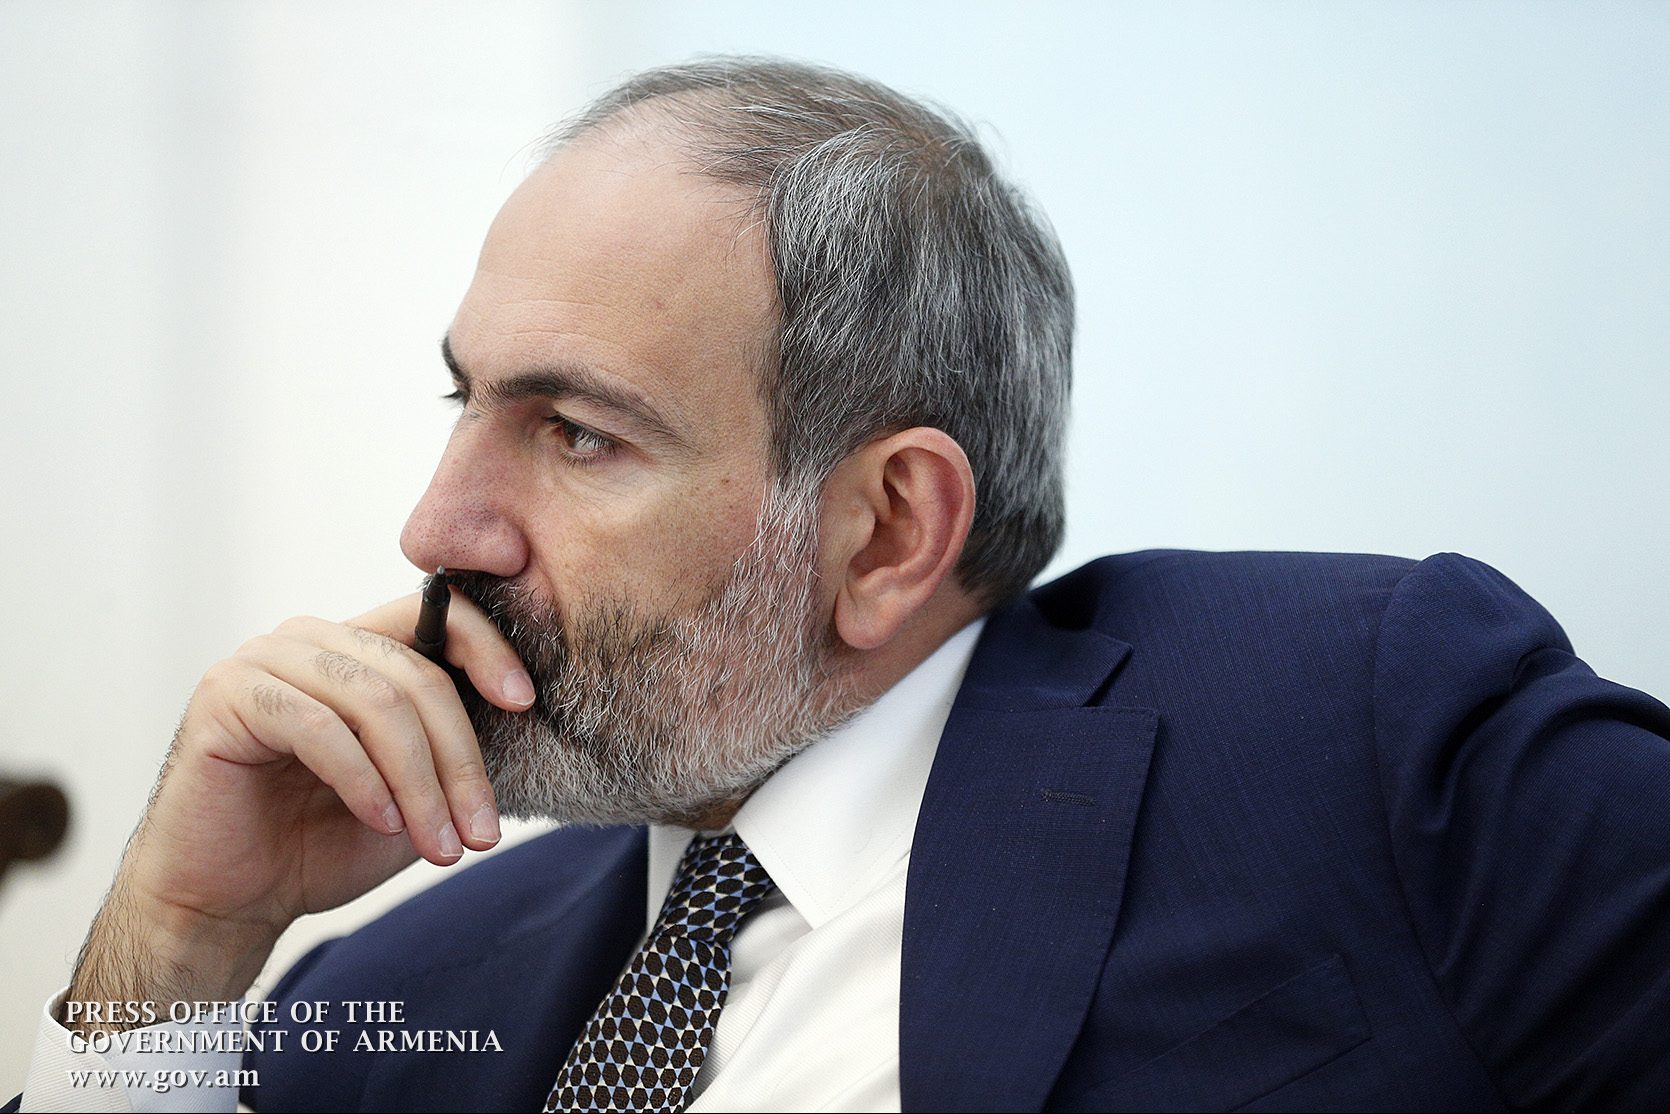 Հայաստանի և Ադրբեջանի միջև պետք է խաղաղության պայմանագիր ստորագրվի. Հայաստանը պատրաստ է բանակցությունների. վարչապետ